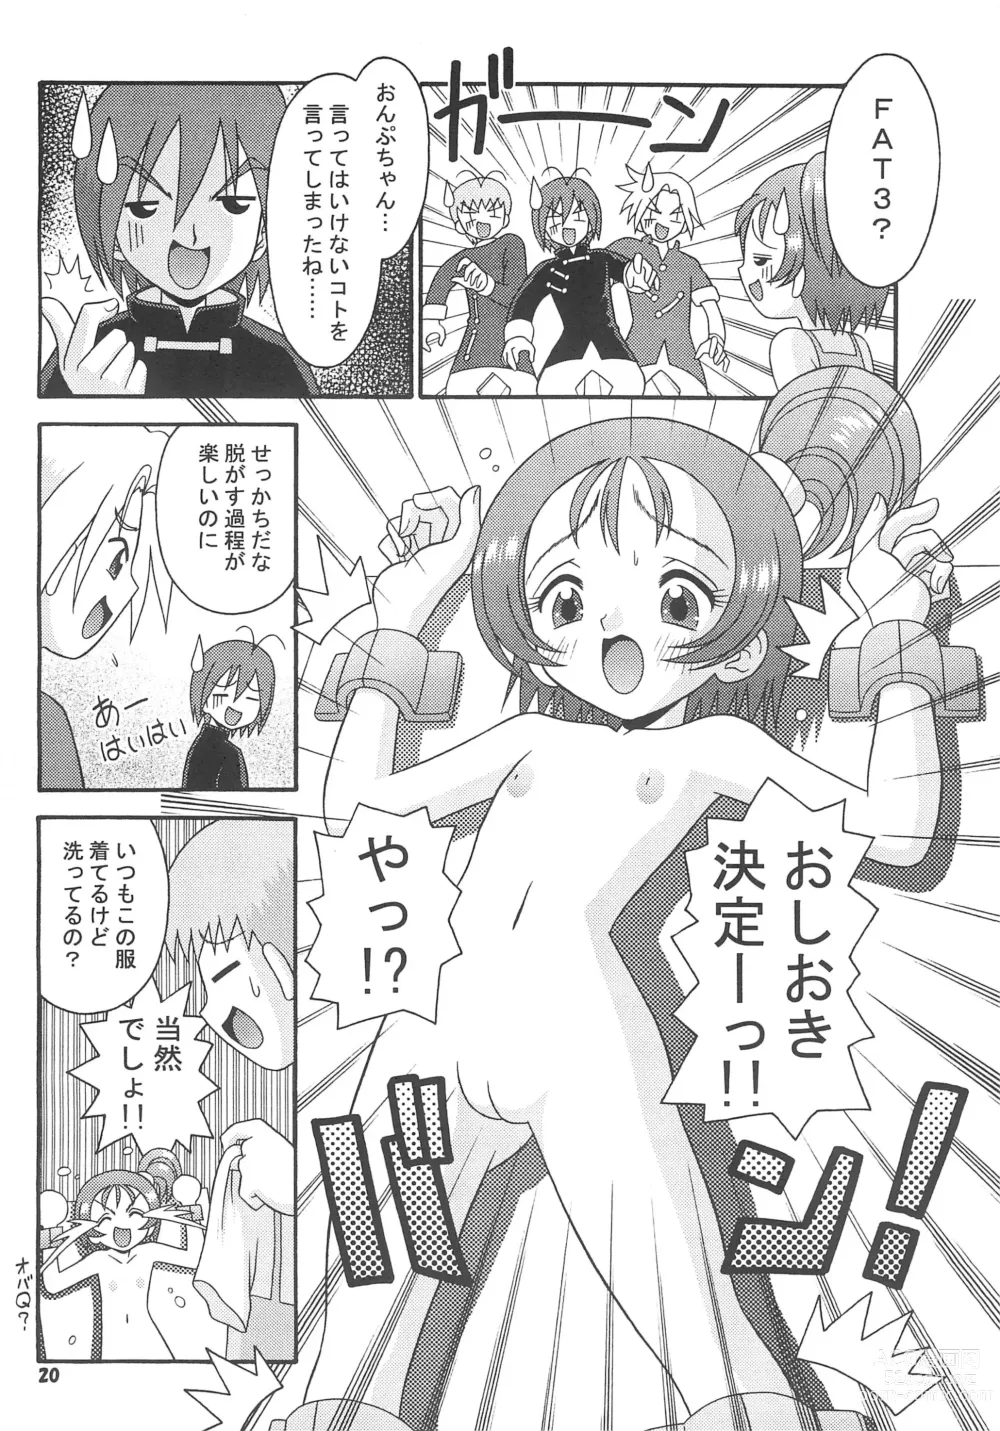 Page 22 of doujinshi Subete no Mirai ni Hikari are 4